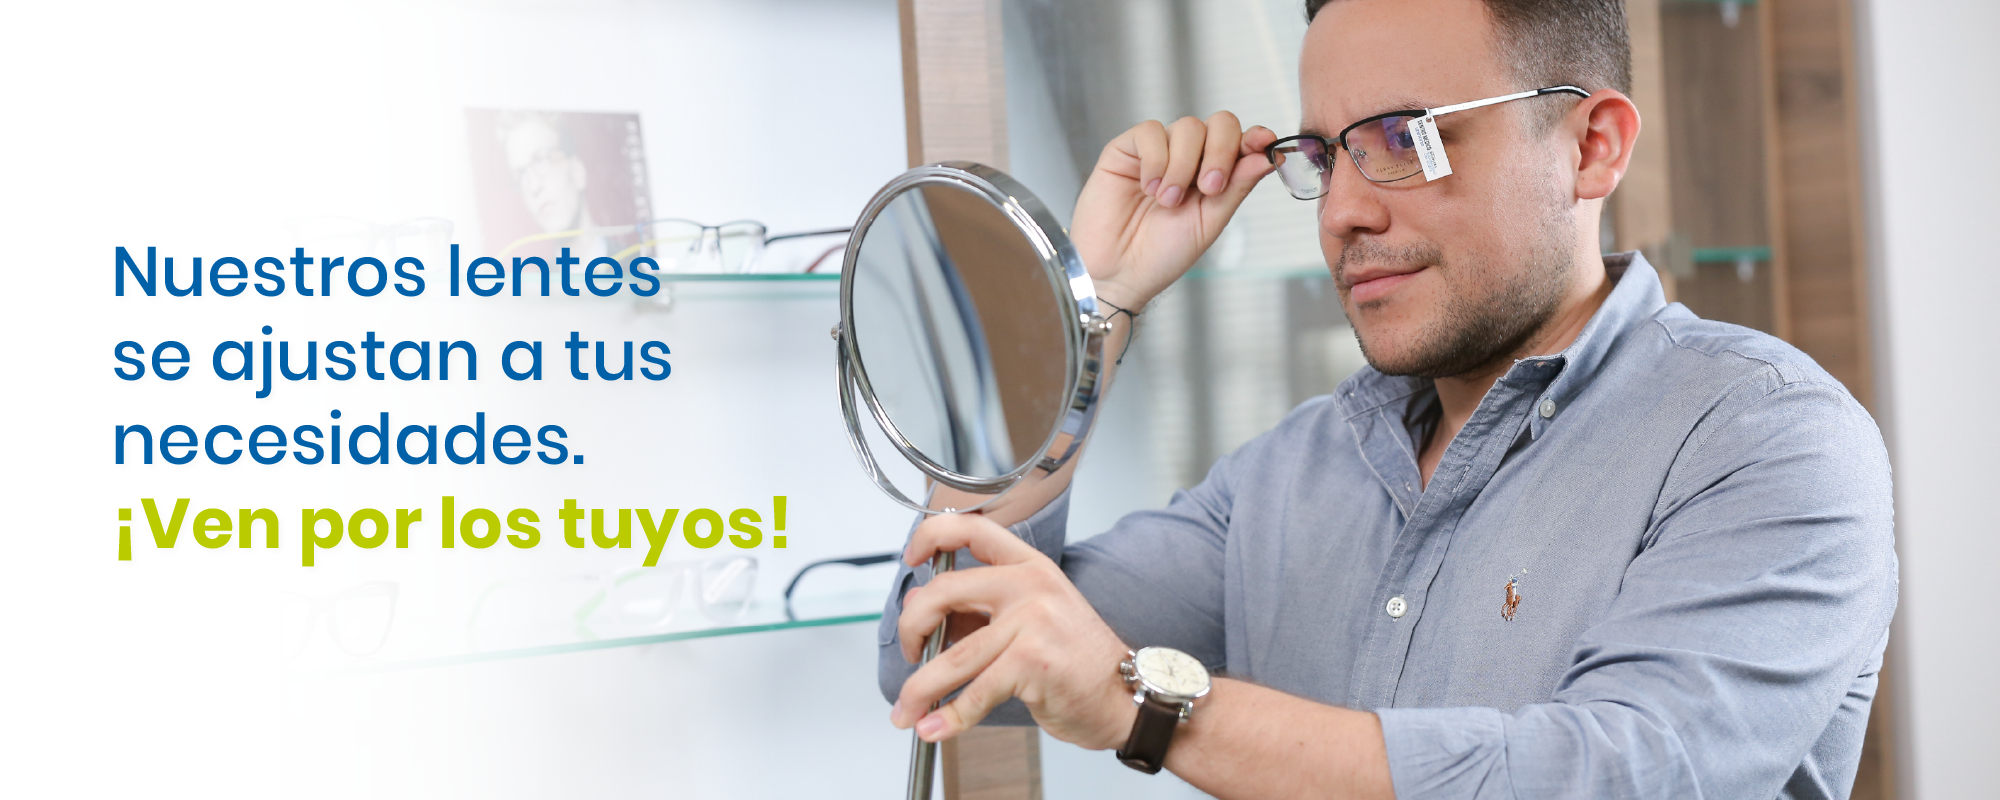 Nuestros lentes se ajustan a tus necesidades. ¡Ven por los tuyos!